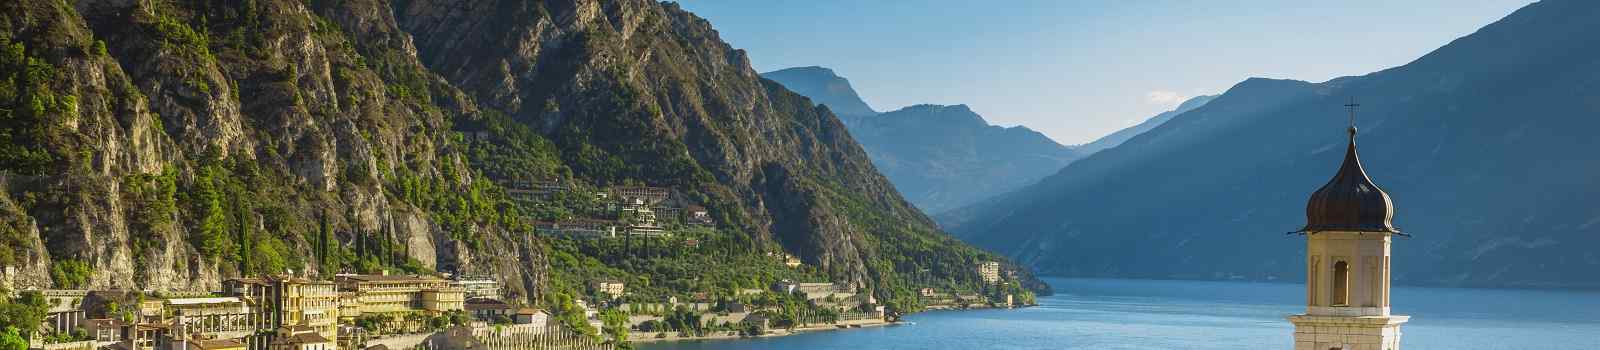 SUEDTIROL-GARDA Lake Garda